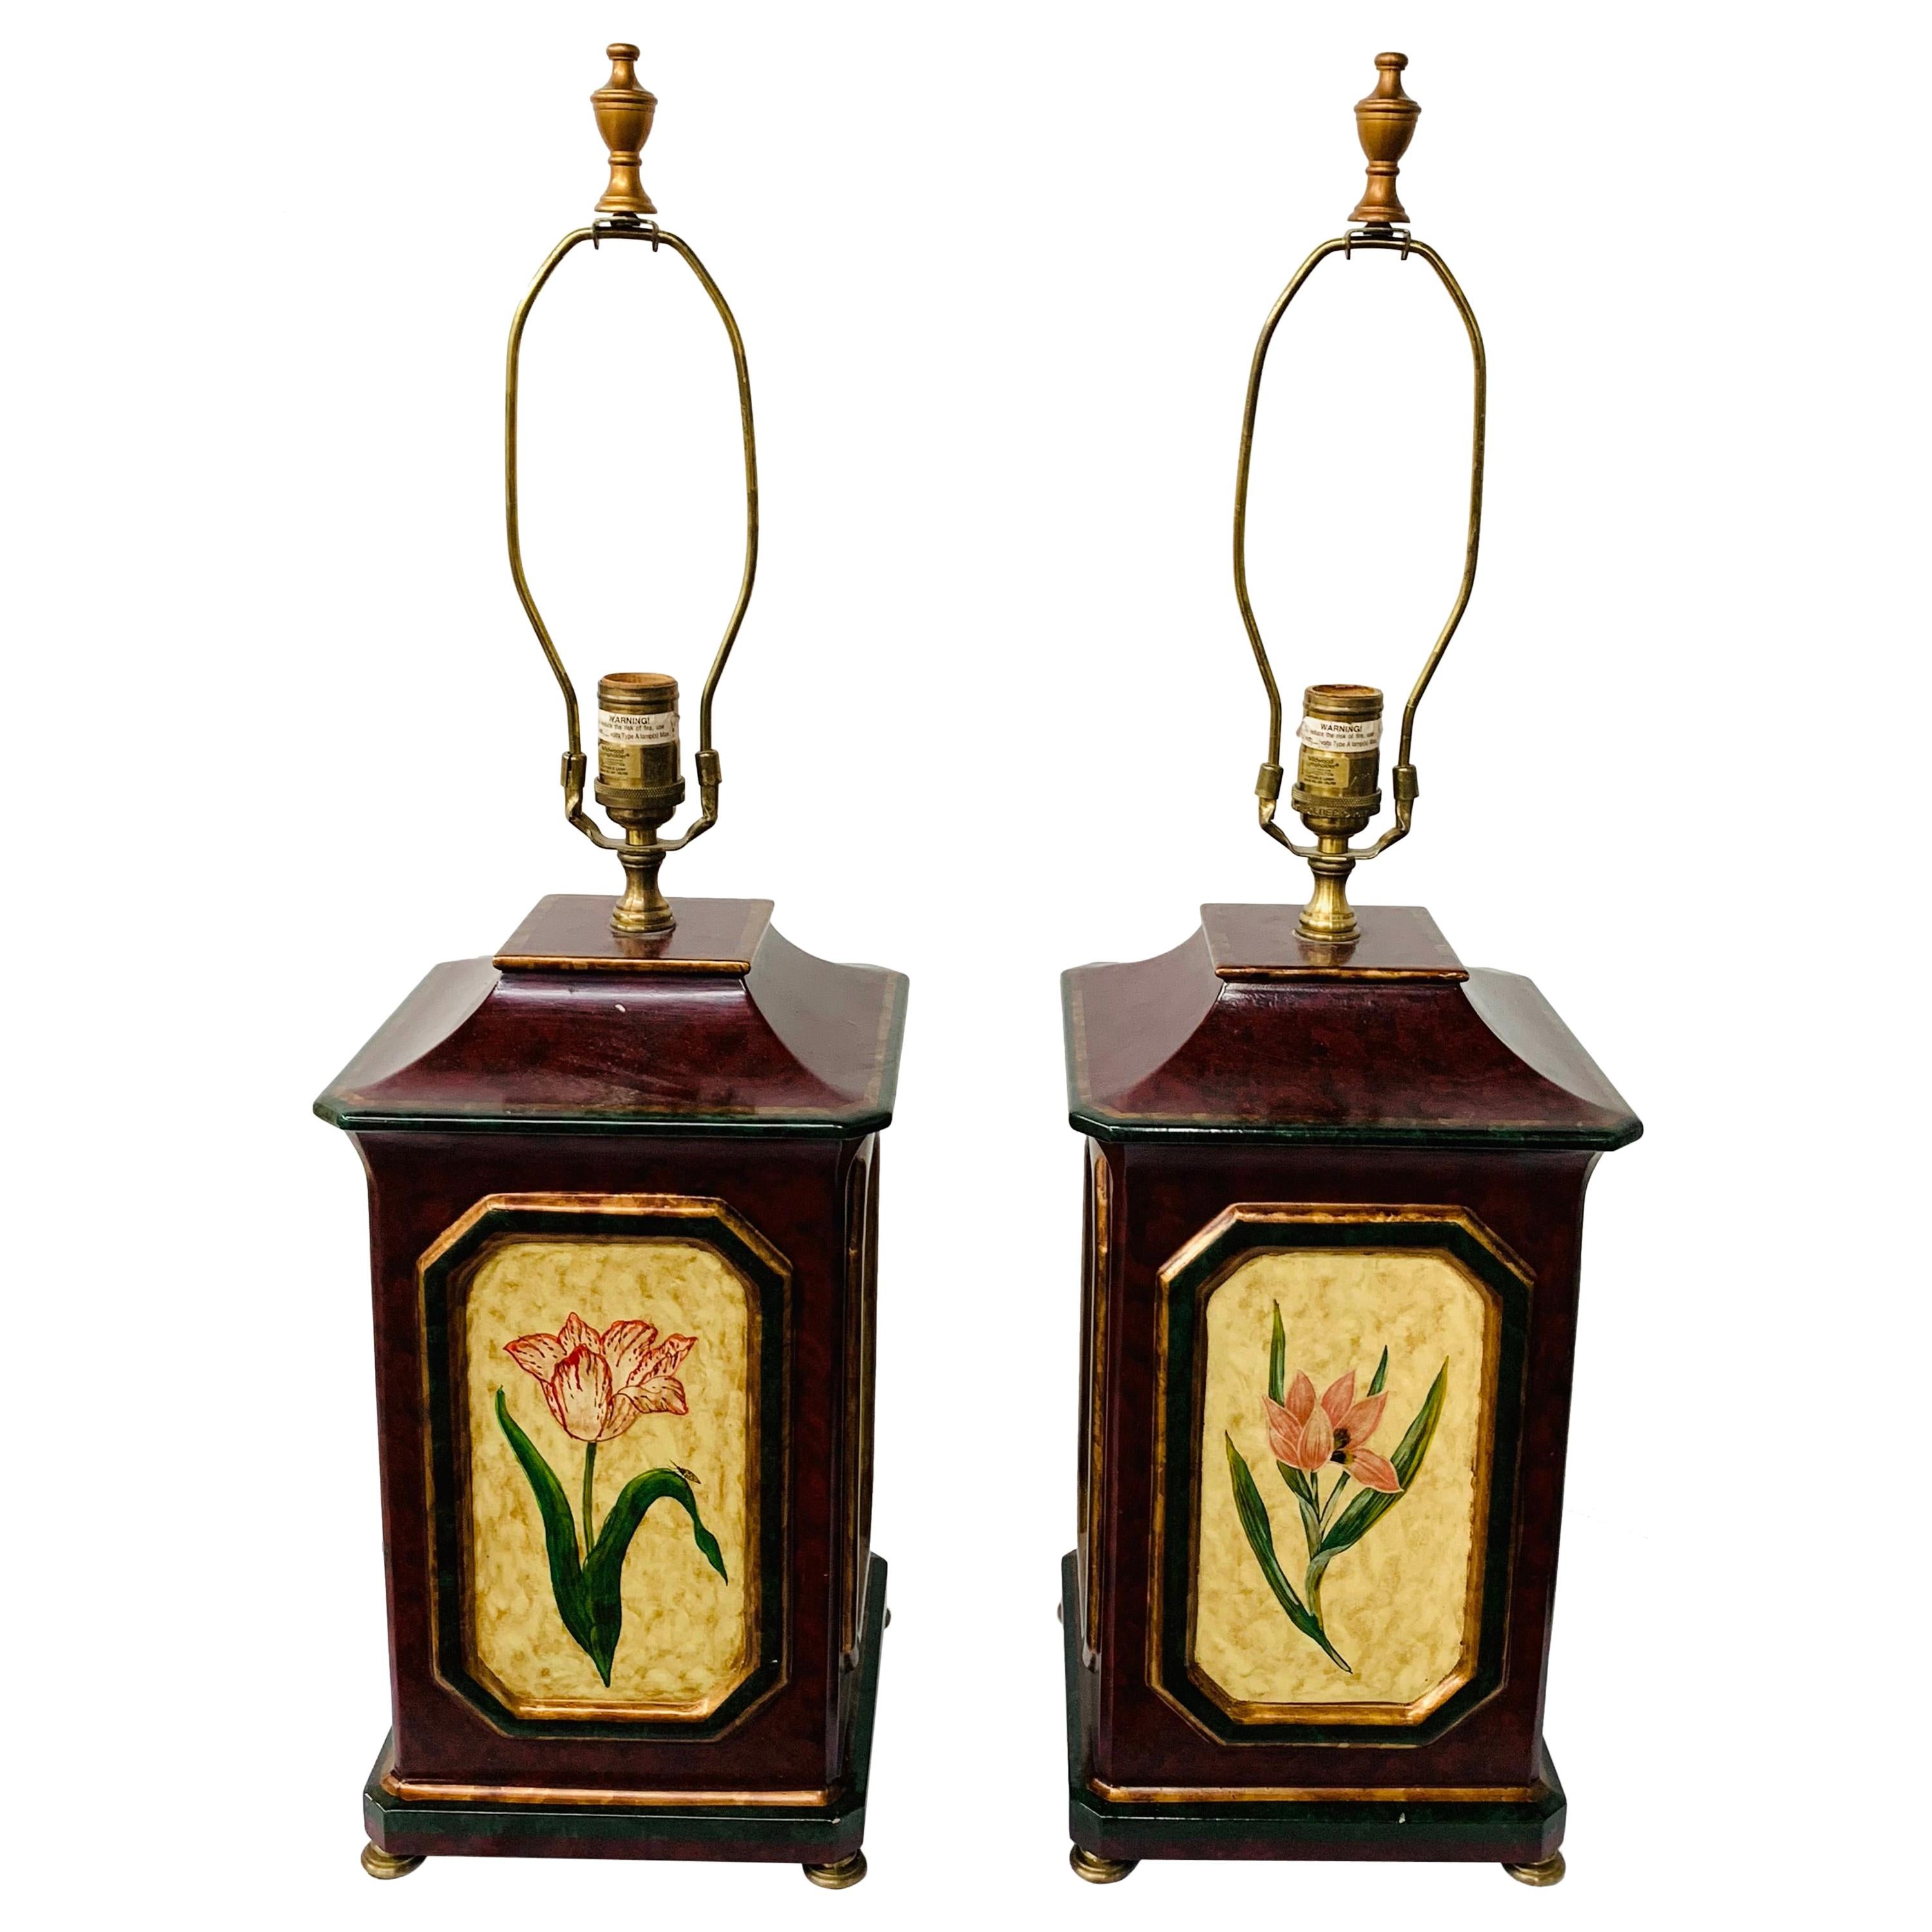 Paire de lampes de bureau orientales en bois peintes à la main avec décoration florale